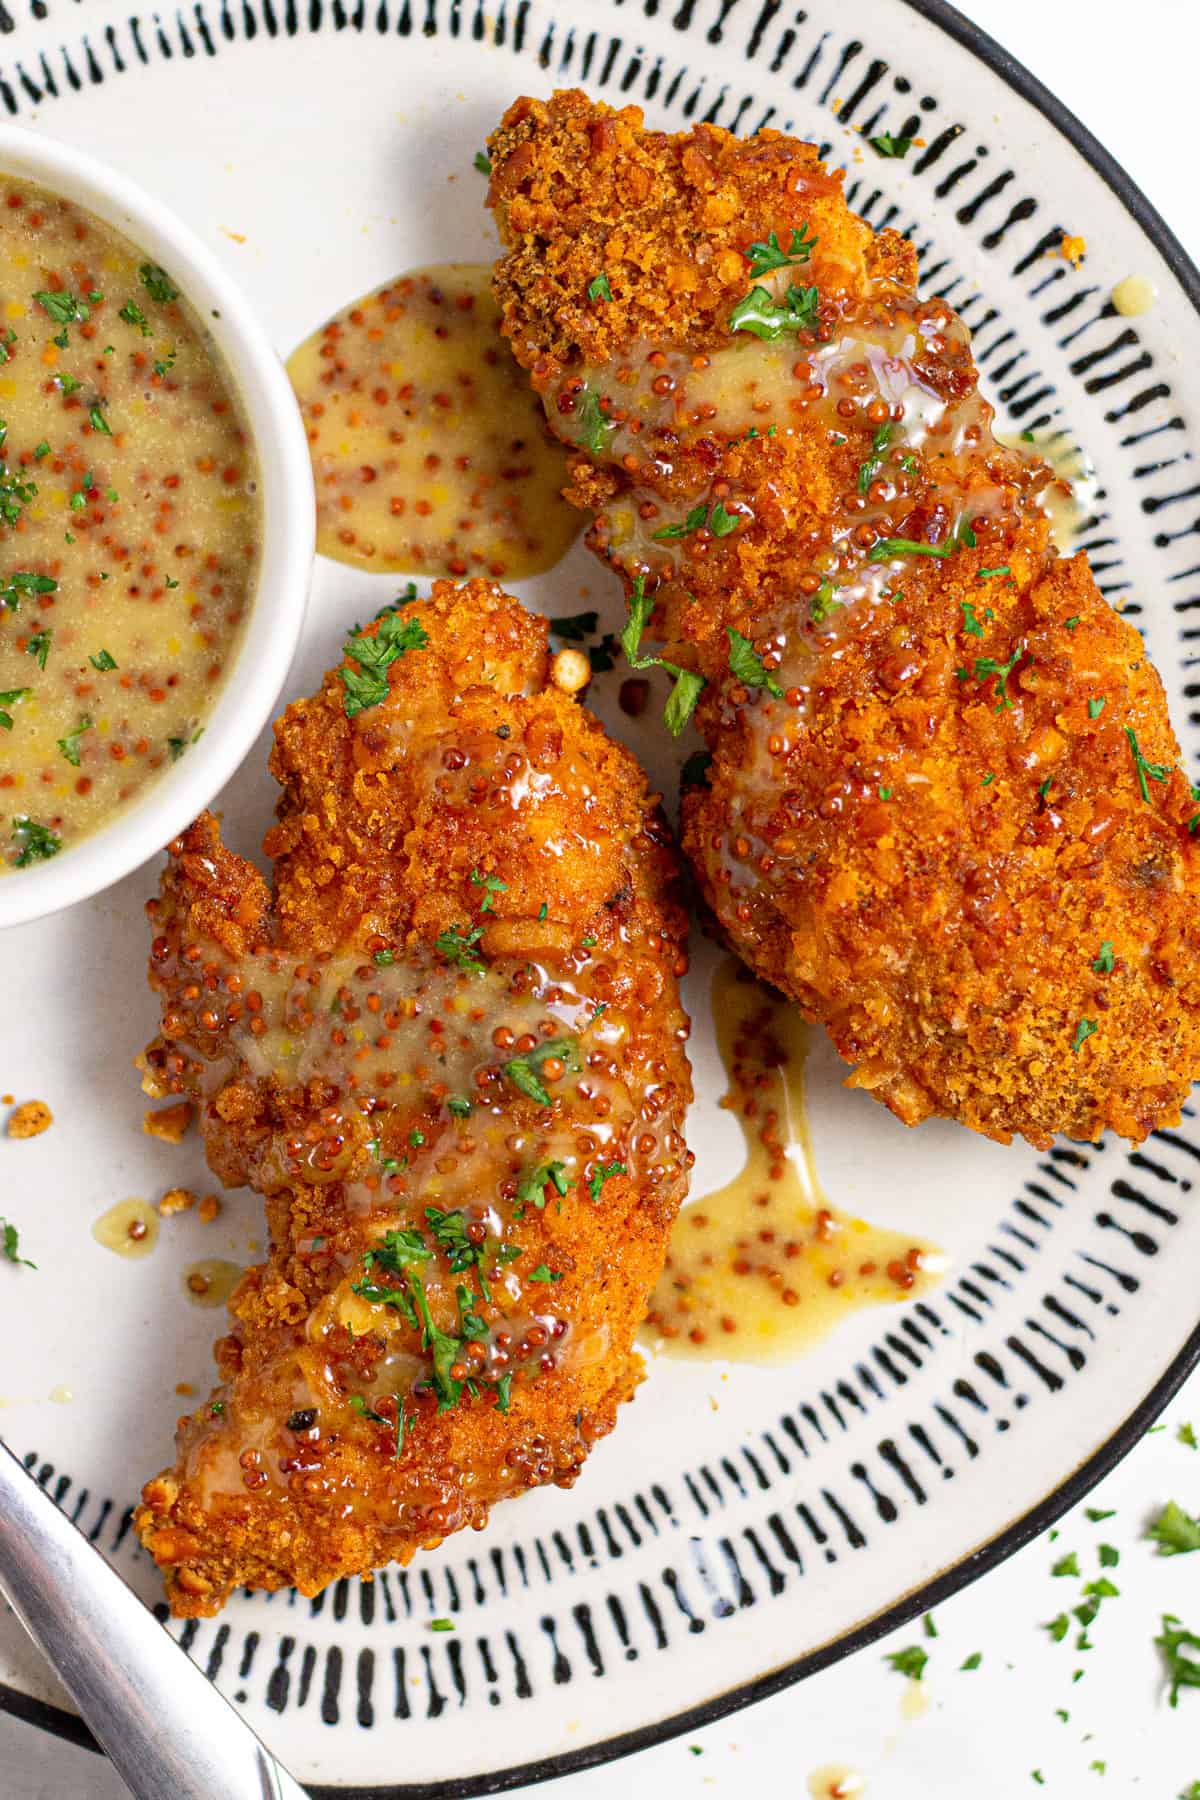 Meal plan 230: Baked chicken tenders at Midwest Foodie